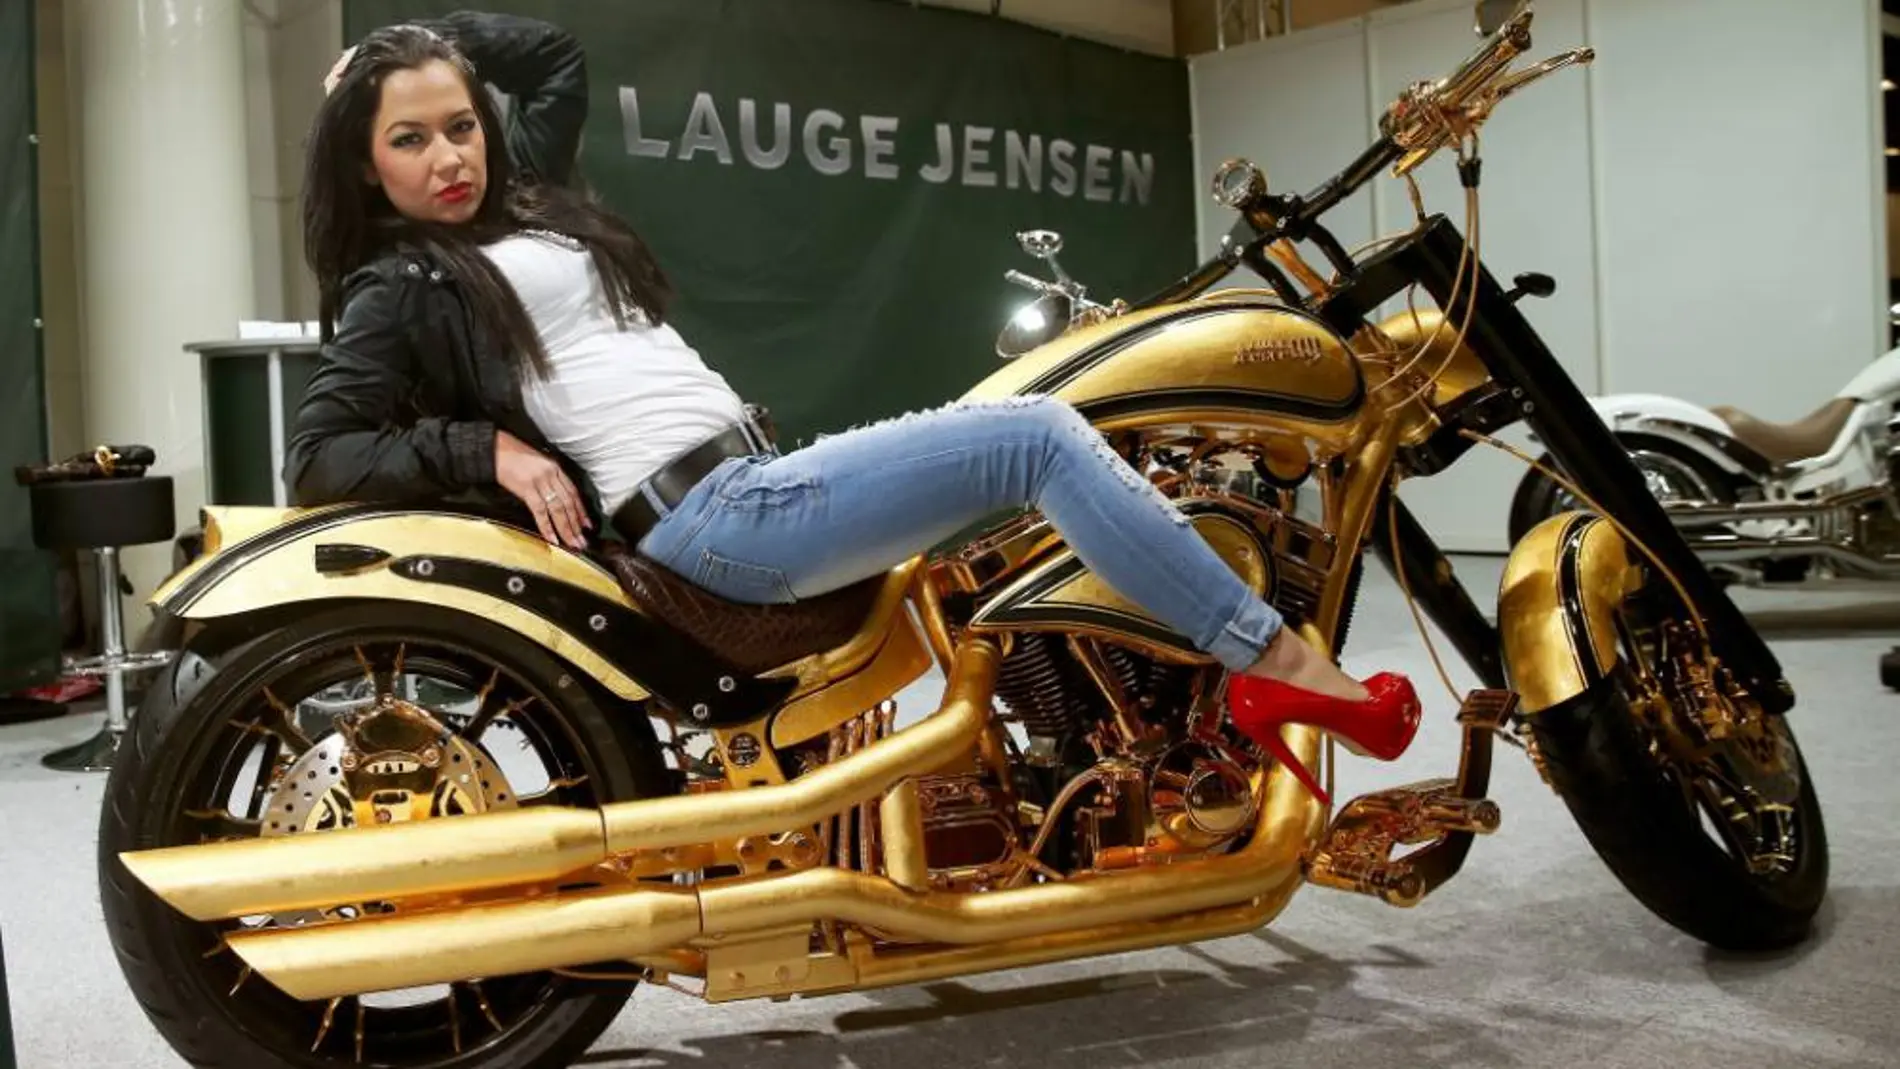 Una modelo posa sobre la Harley Davidson bañada en oro